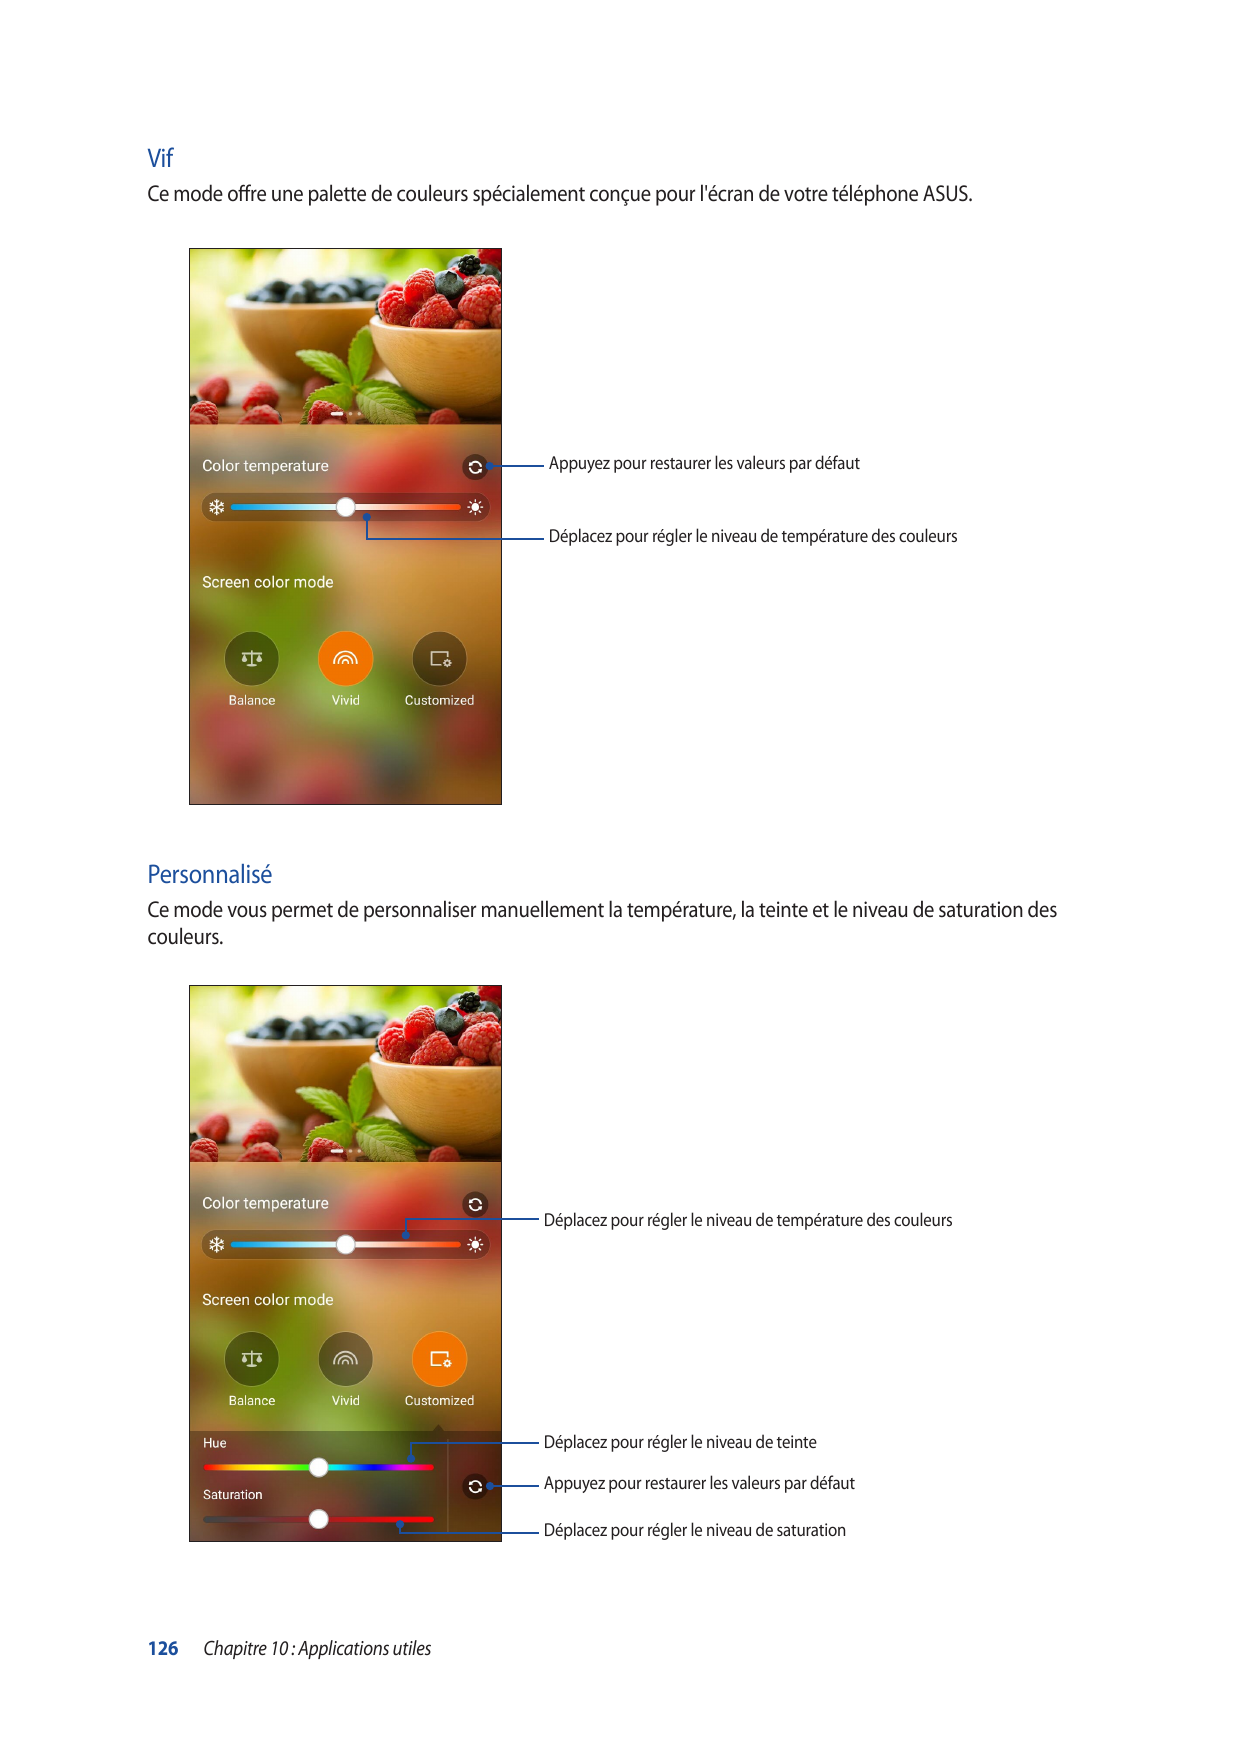 VifCe mode offre une palette de couleurs spécialement conçue pour l'écran de votre téléphone ASUS.Appuyez pour restaurer les val